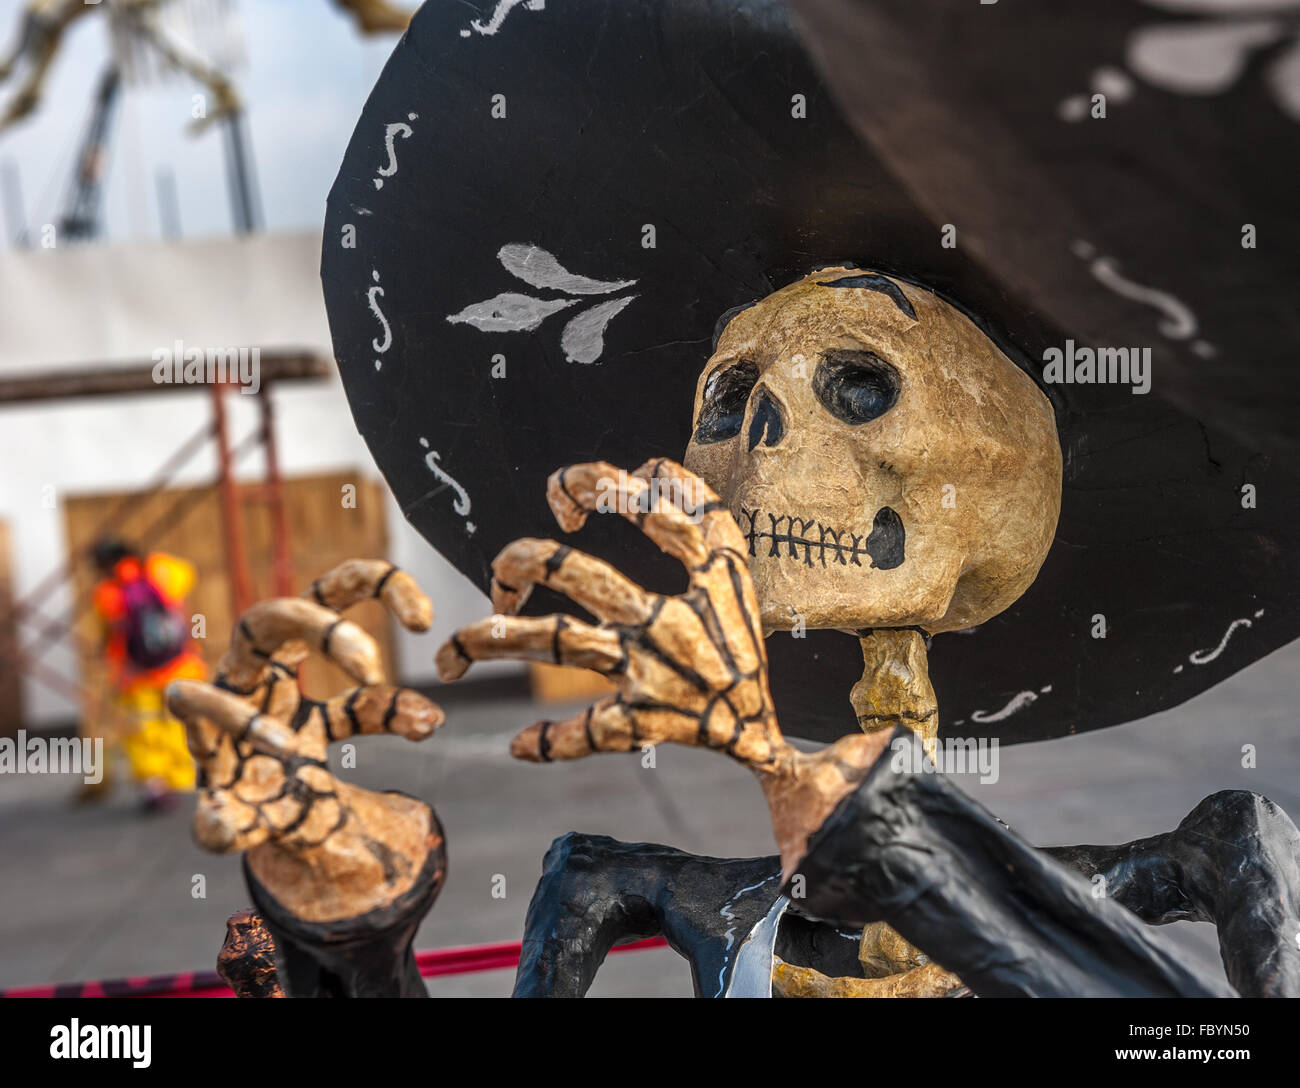 Dead mariachi, Dia de los muertos, Day of the dead in Mexico Stock Photo